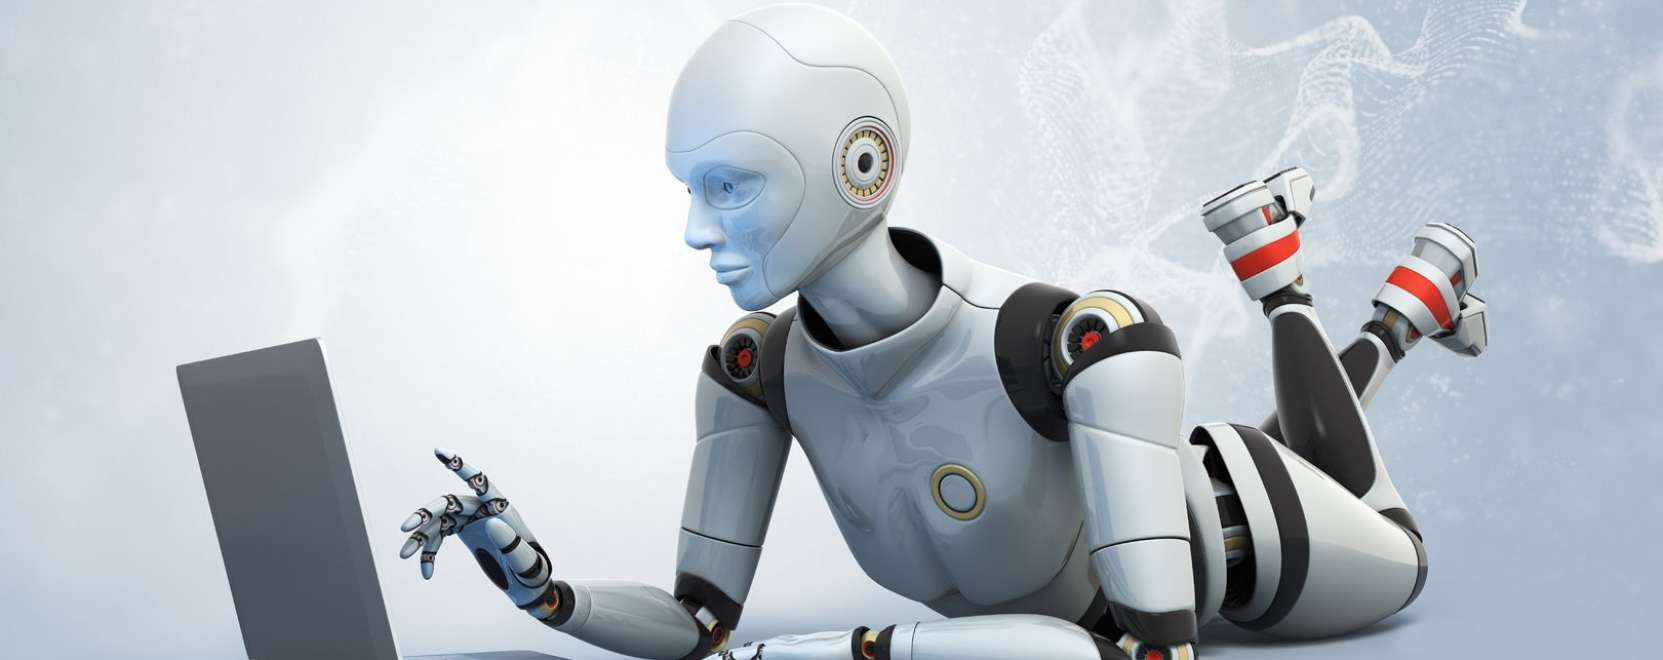 Asimov után szabadon: a robotika legújabb törvényei